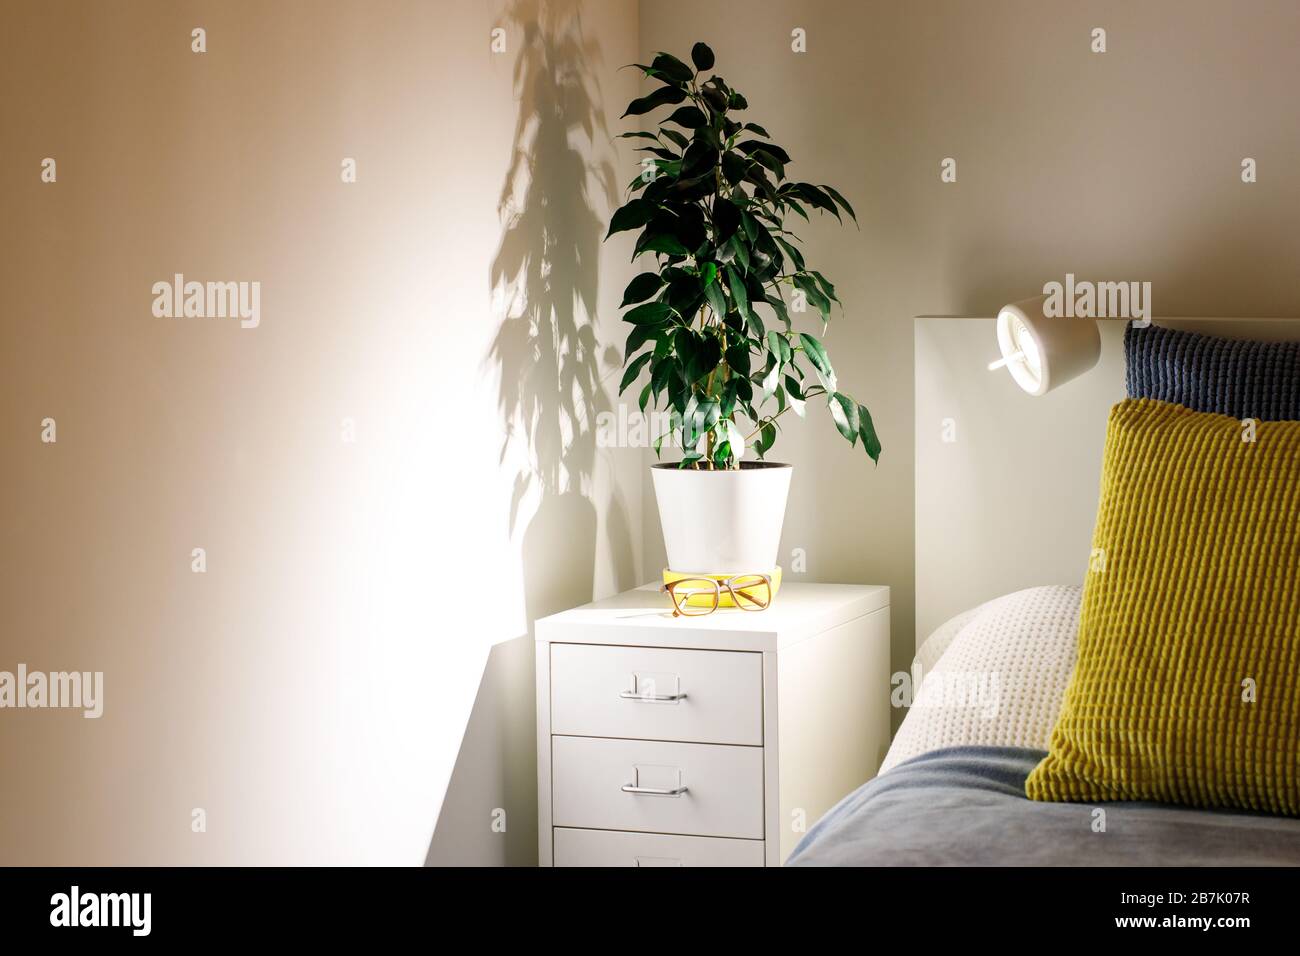 Topfpflanzen FICUS Benjamin in einem gemütlichen Schlafzimmer am Nachttisch. Nachttisch, gelbe und blaue Kissen, Lampe, weiße Wände. Scannen Stockfoto